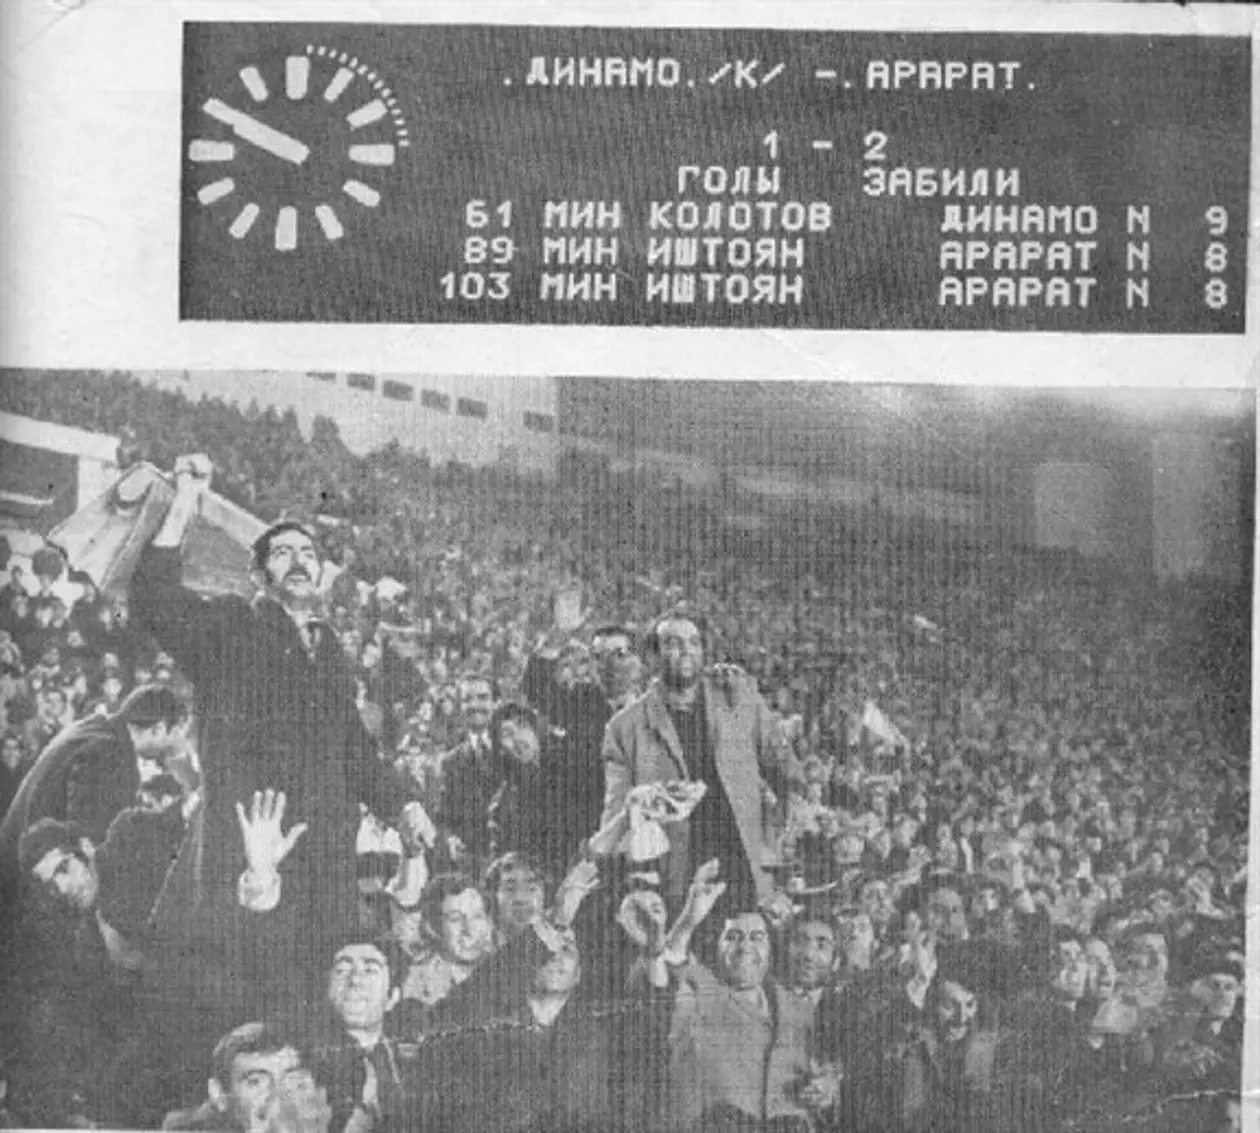 1973. Армянский сезон советского футбола, или «Арарат» выше всех